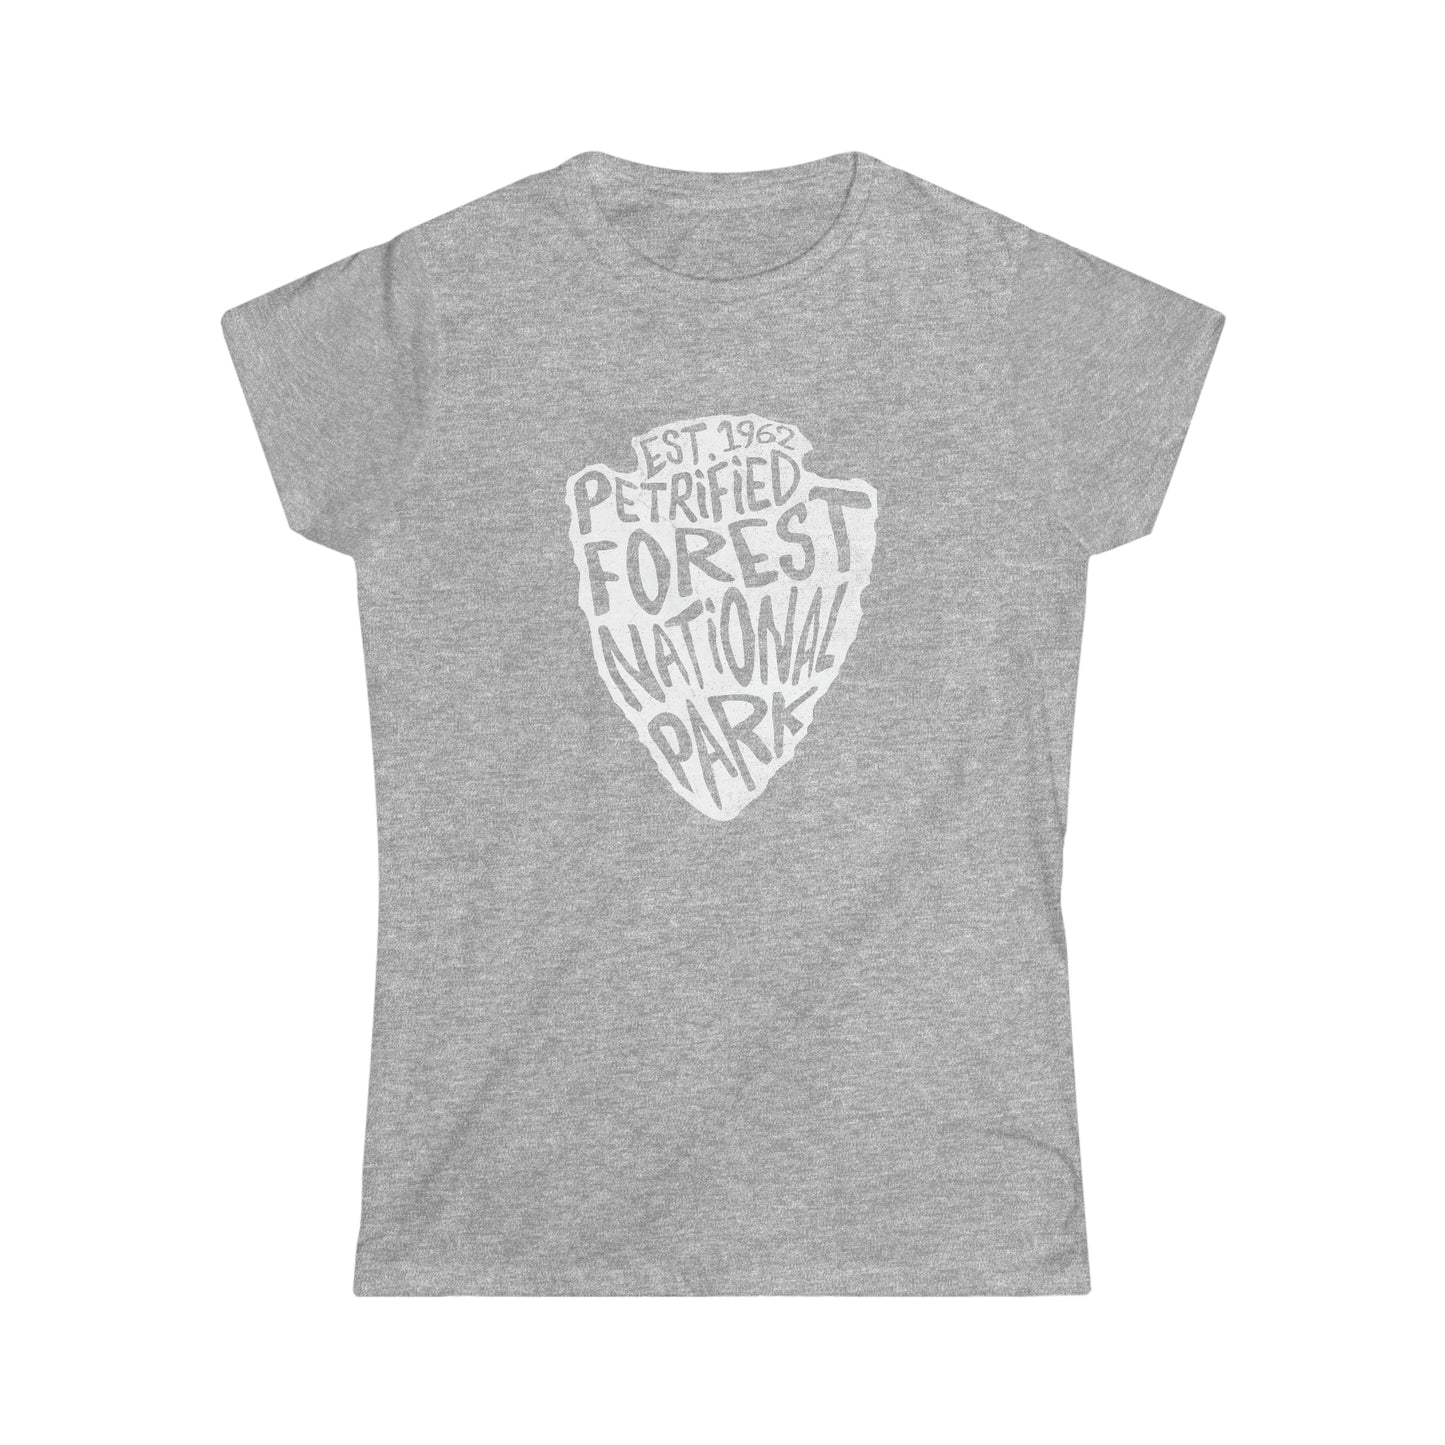 Petrified Forest National Park Women's T-Shirt - Arrowhead Design